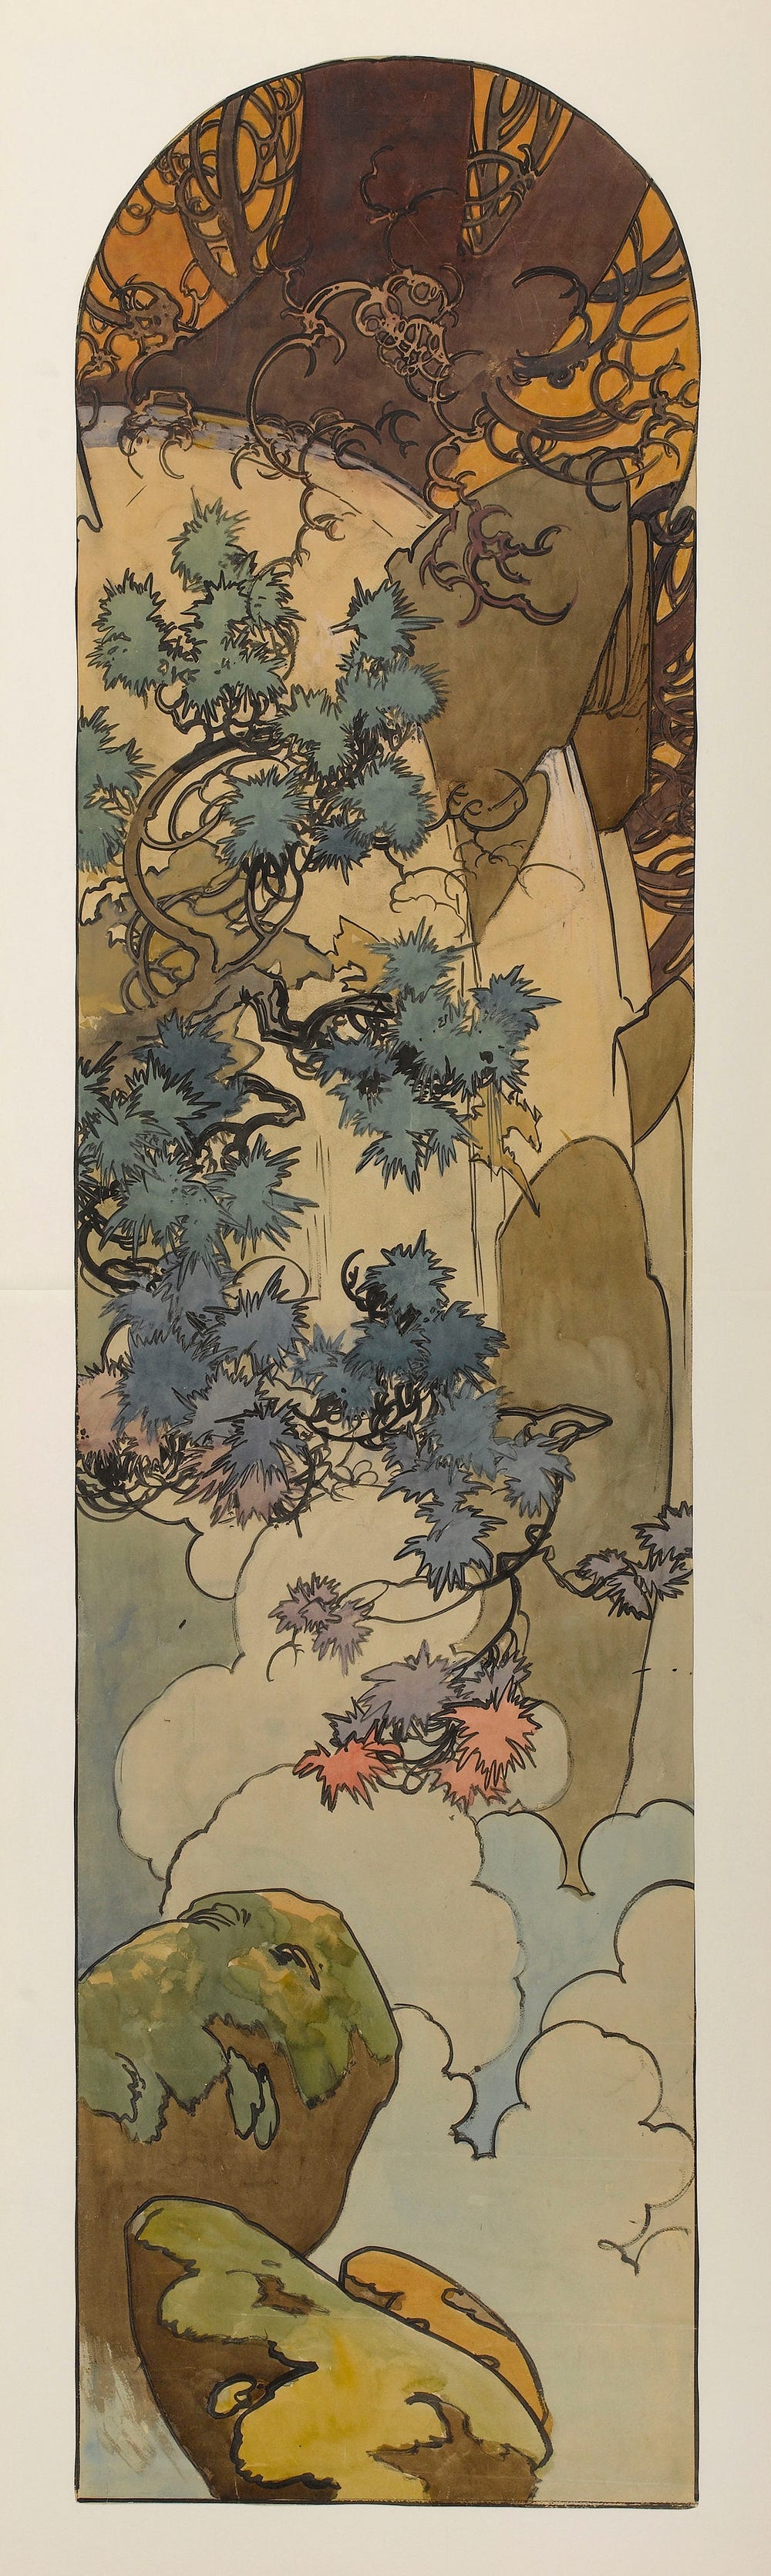 Carton de vitrail pour la bijouterie Fouquet by Alphonse Mucha